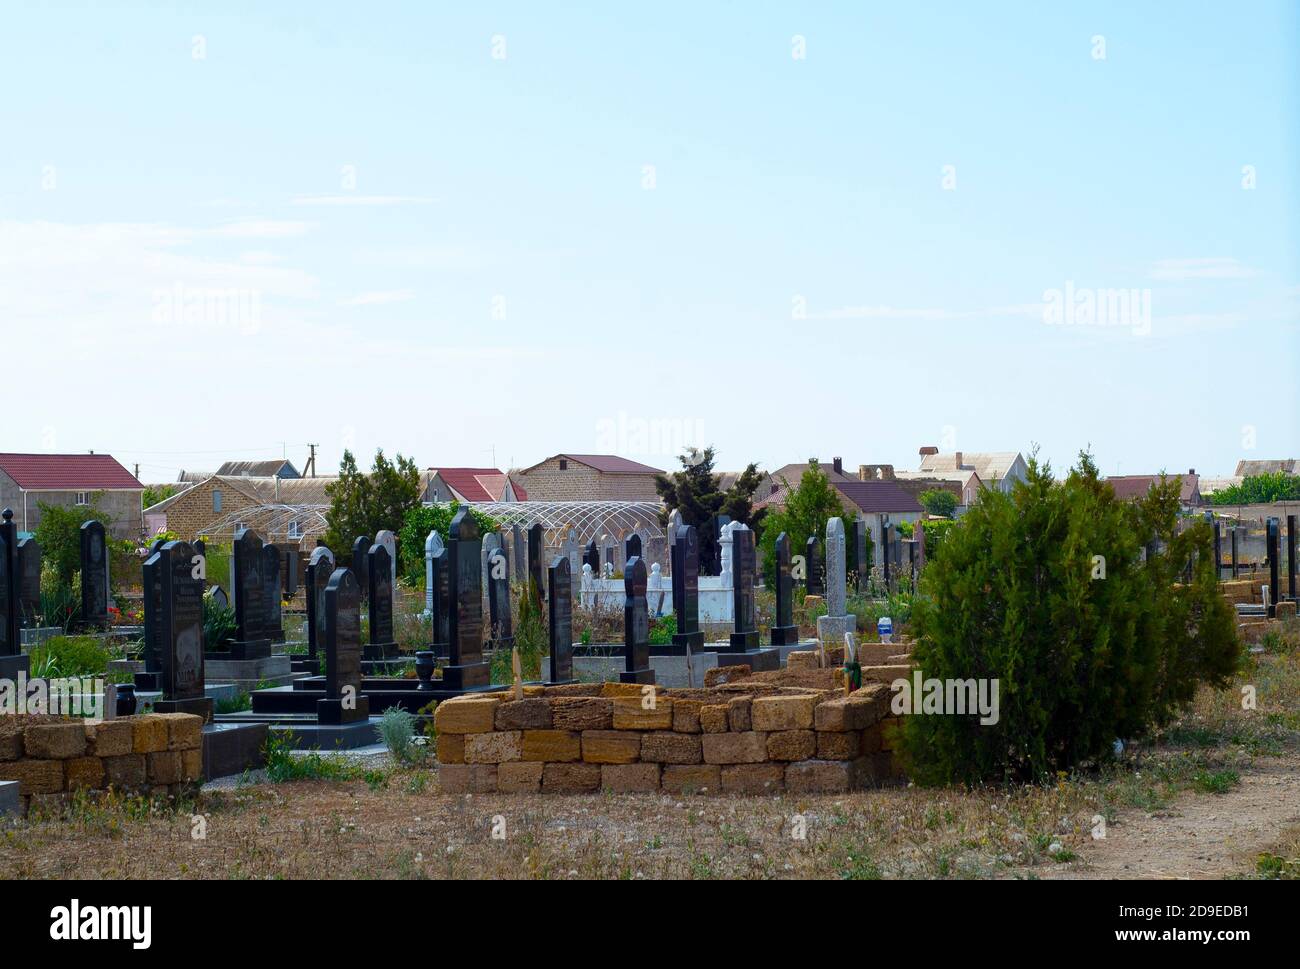 Friedhof auf dem Hintergrund der ländlichen Häuser. Blauer Himmel. Sonniges Wetter. Die Beziehung zwischen Lebenden und Toten. Gemeinsames Land. Stockfoto